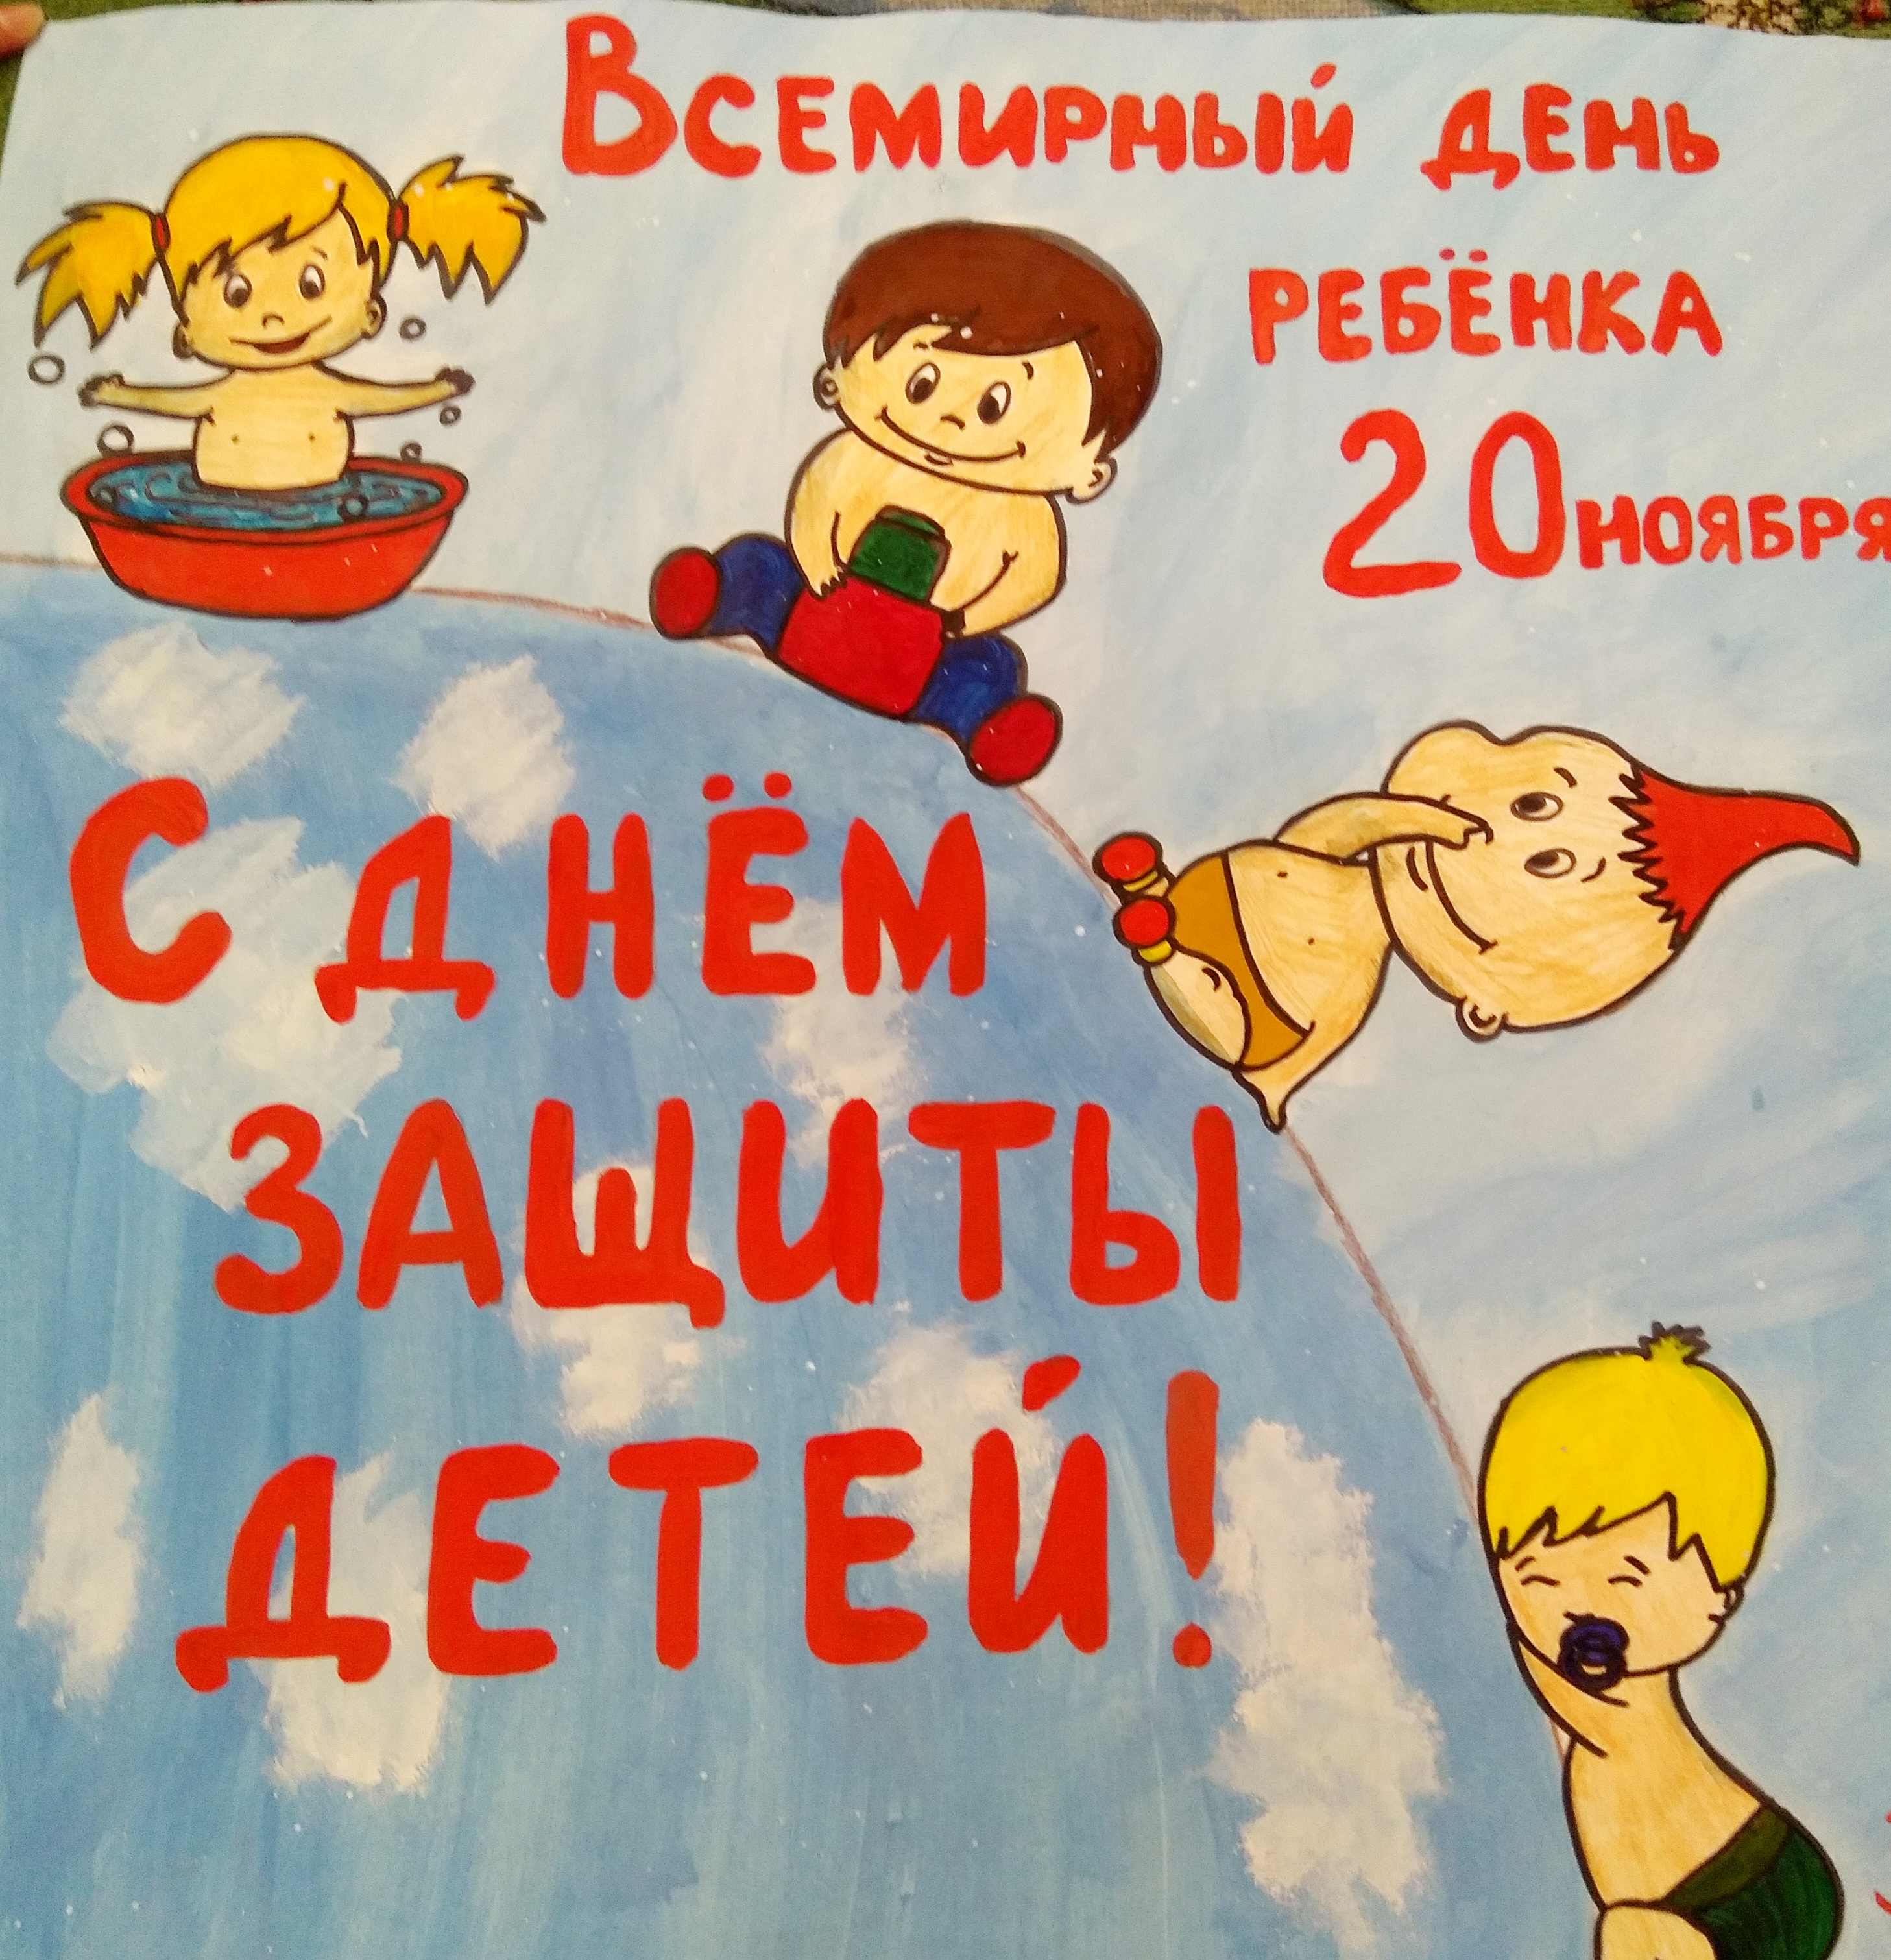 Плакат права ребенка 20 ноября